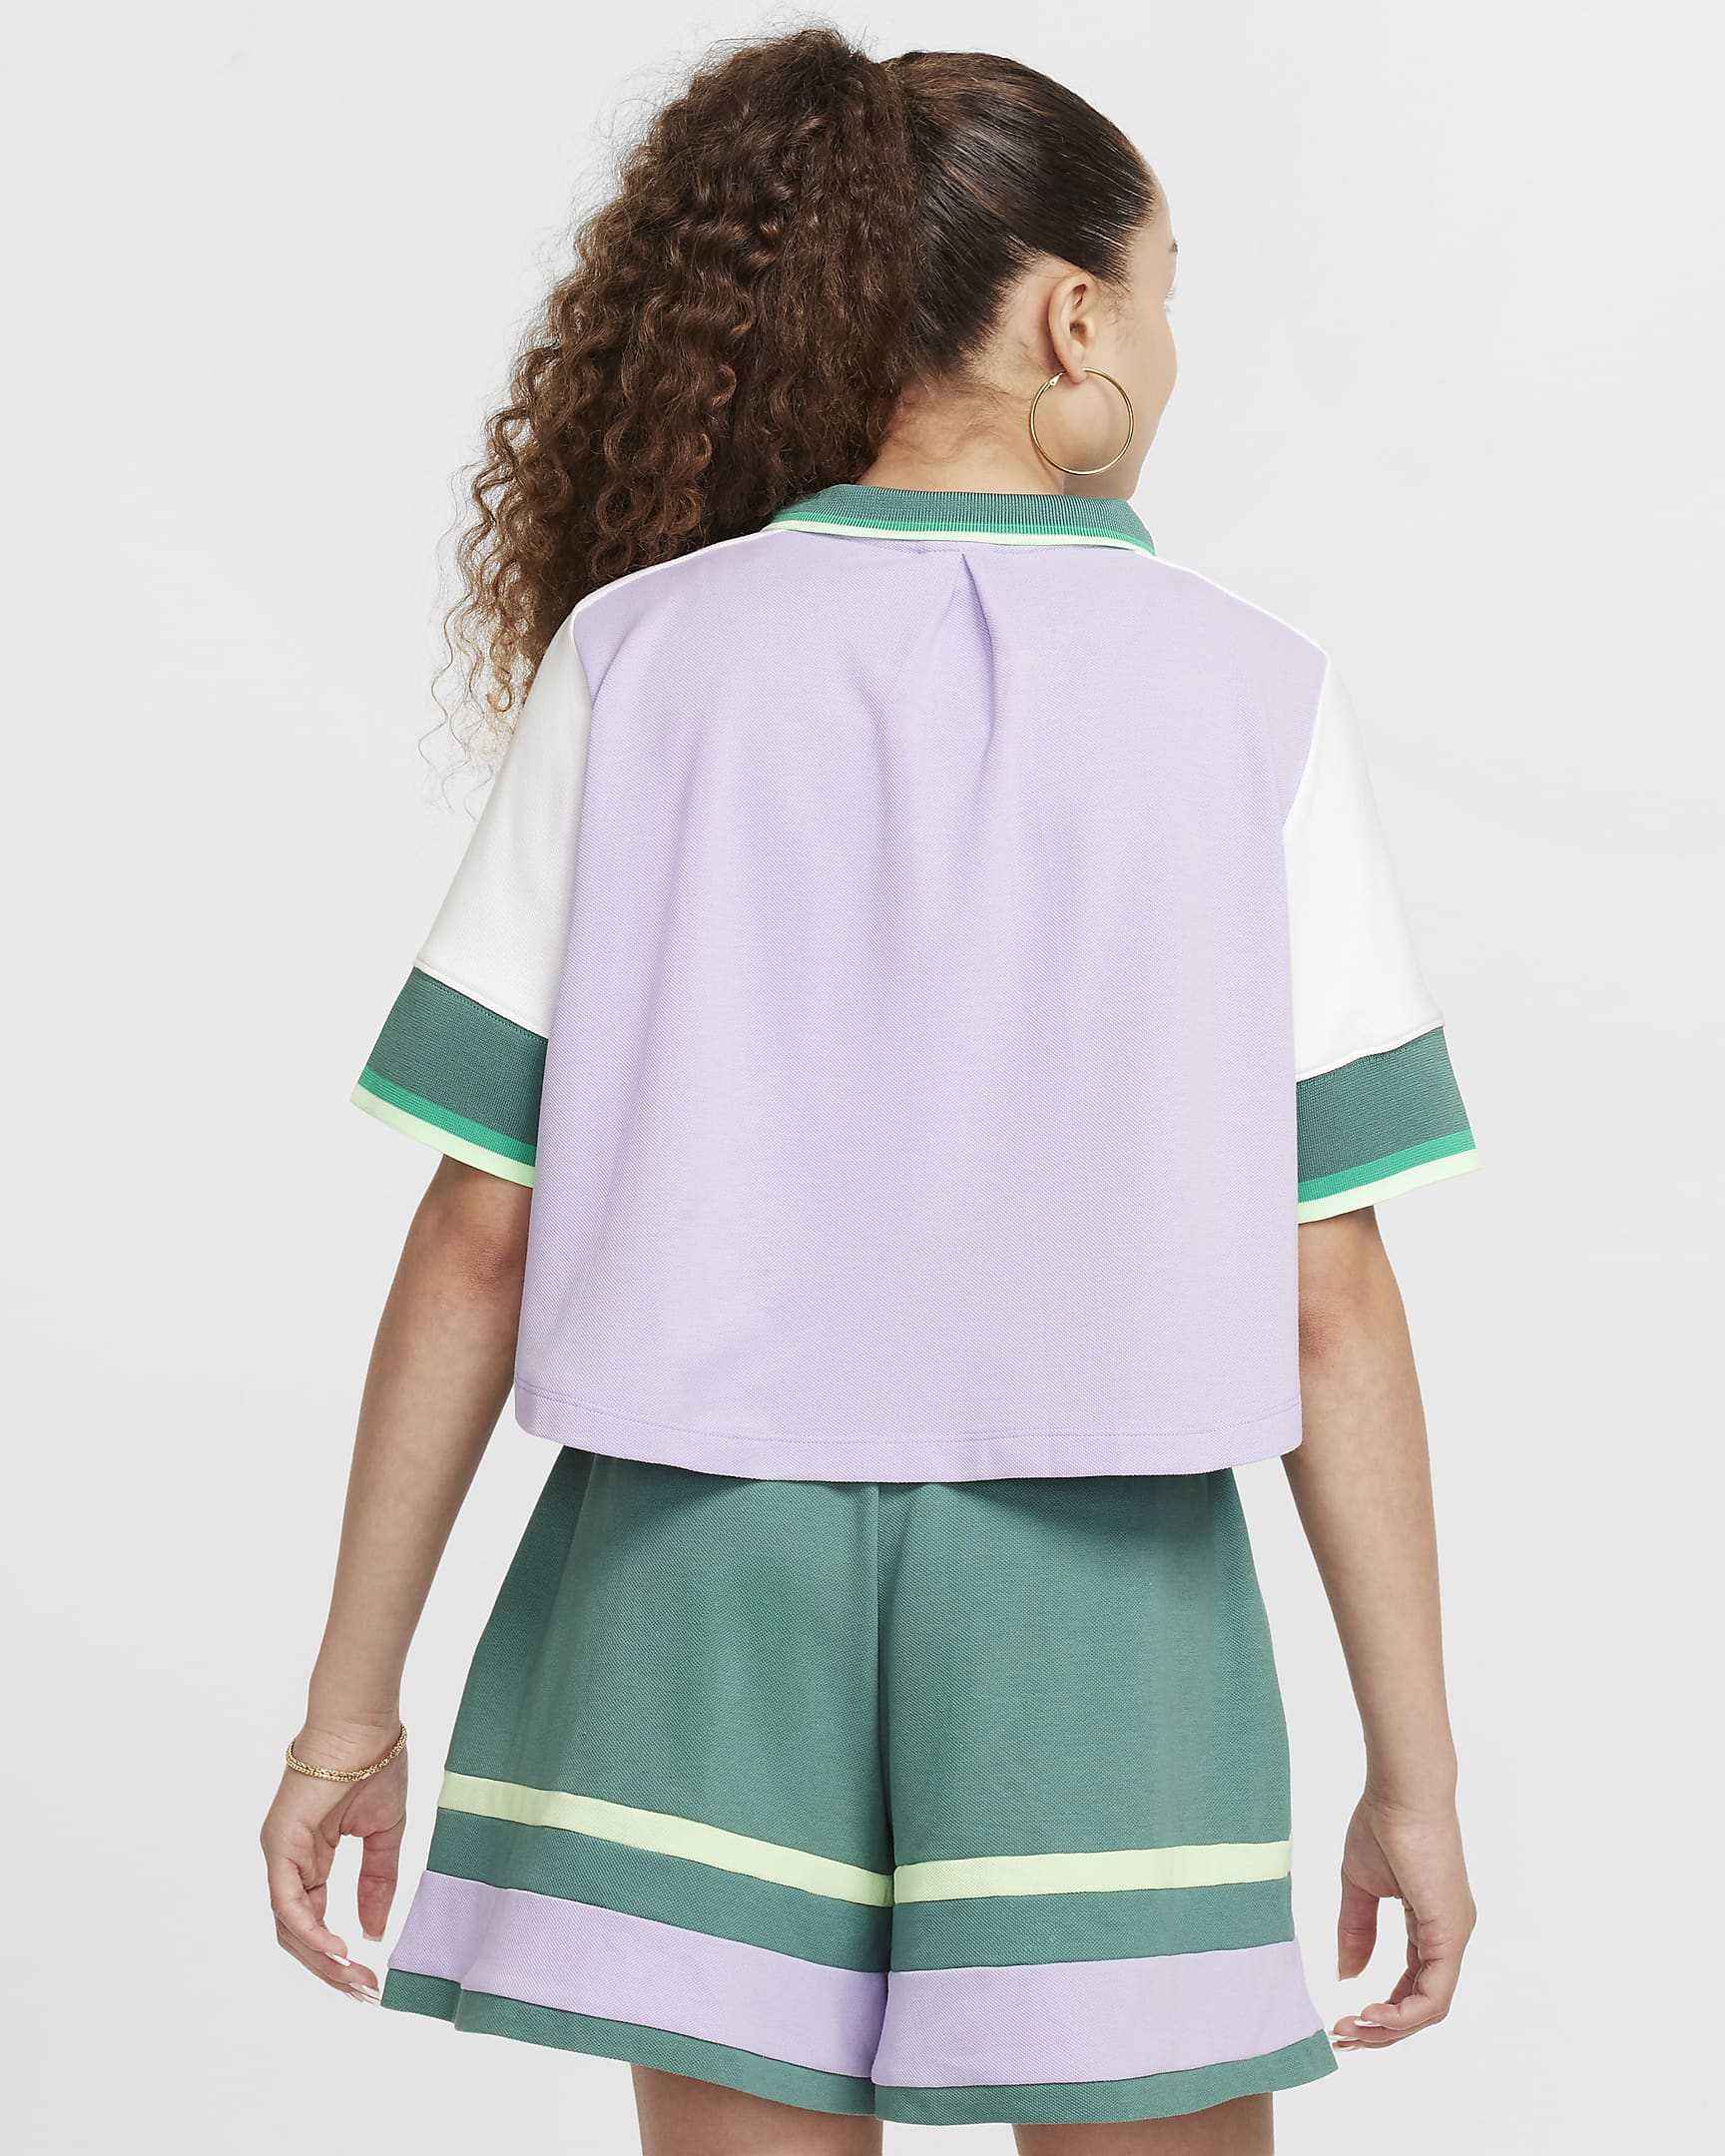 Nike Sportswear Girls' Crop Top - Hydrangeas/White